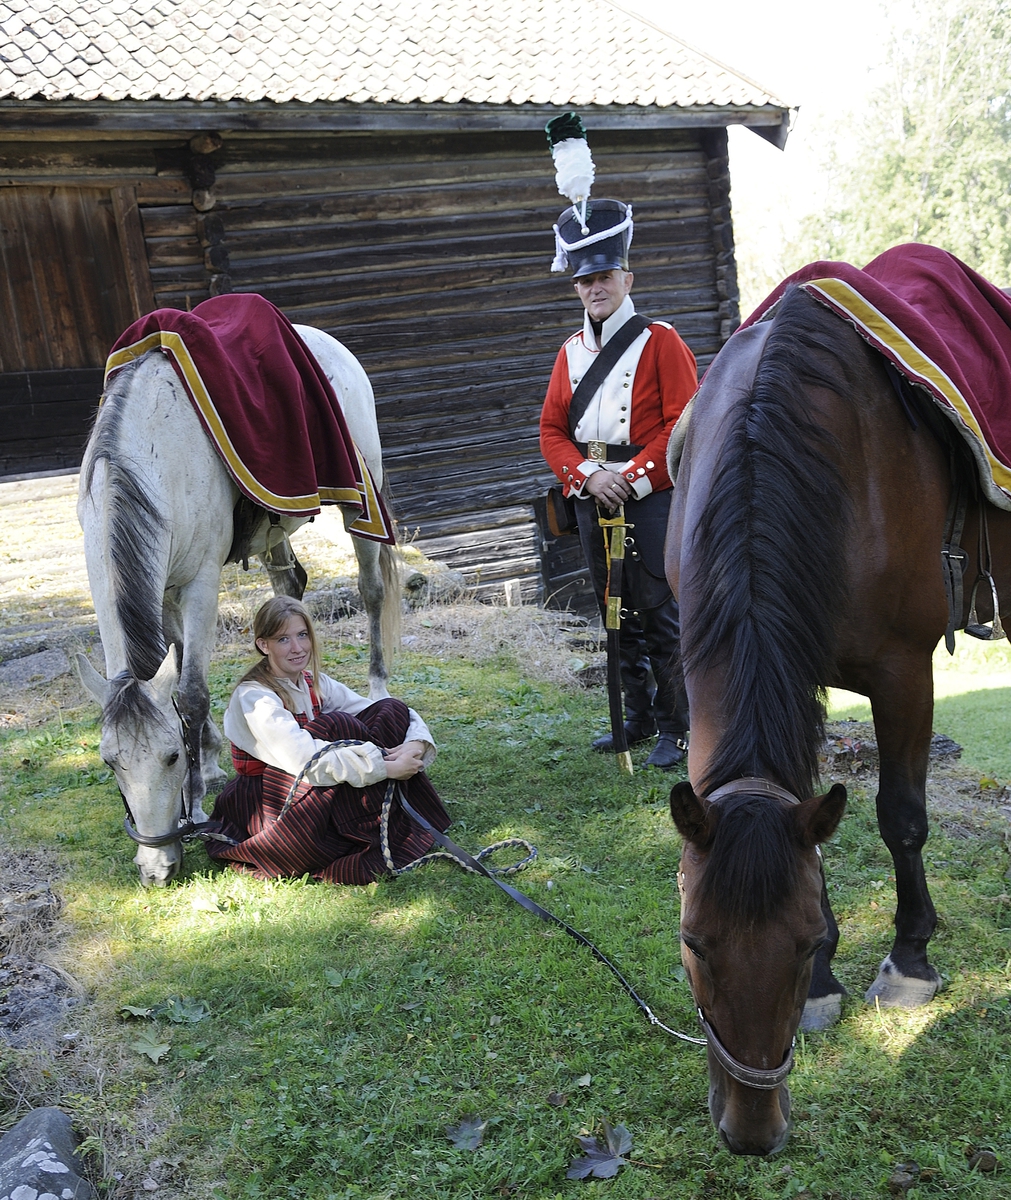 Kulturminnedagen 2013 og Hestensdag 2013 på Domkirkeodden. 
Dragoner, uniformer, gamle våpen. Hest. 